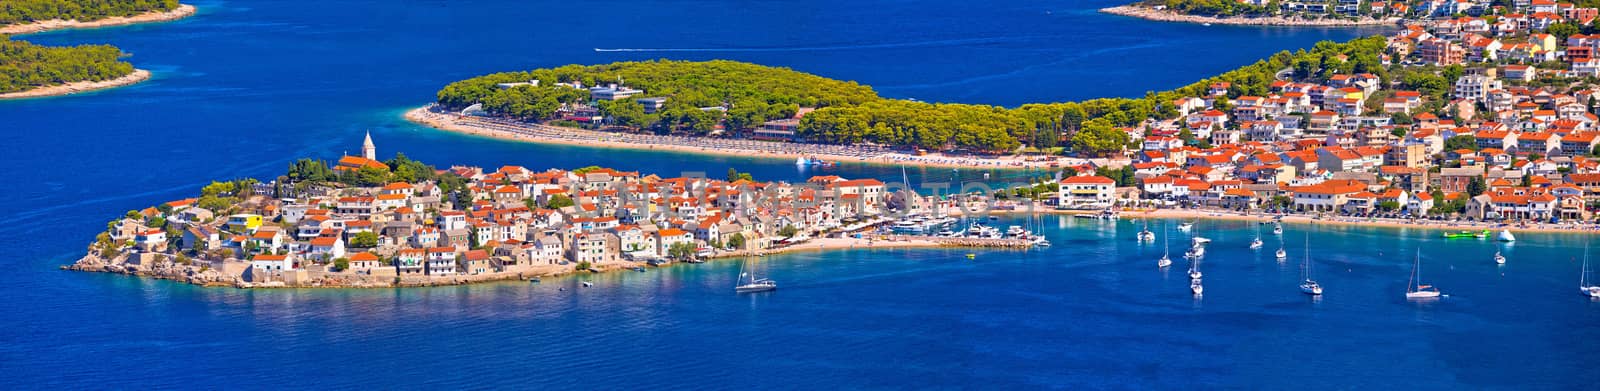 Adriatic tourist destination of Primosten aerial panoramic archipelago view, Dalmatia, Croatia